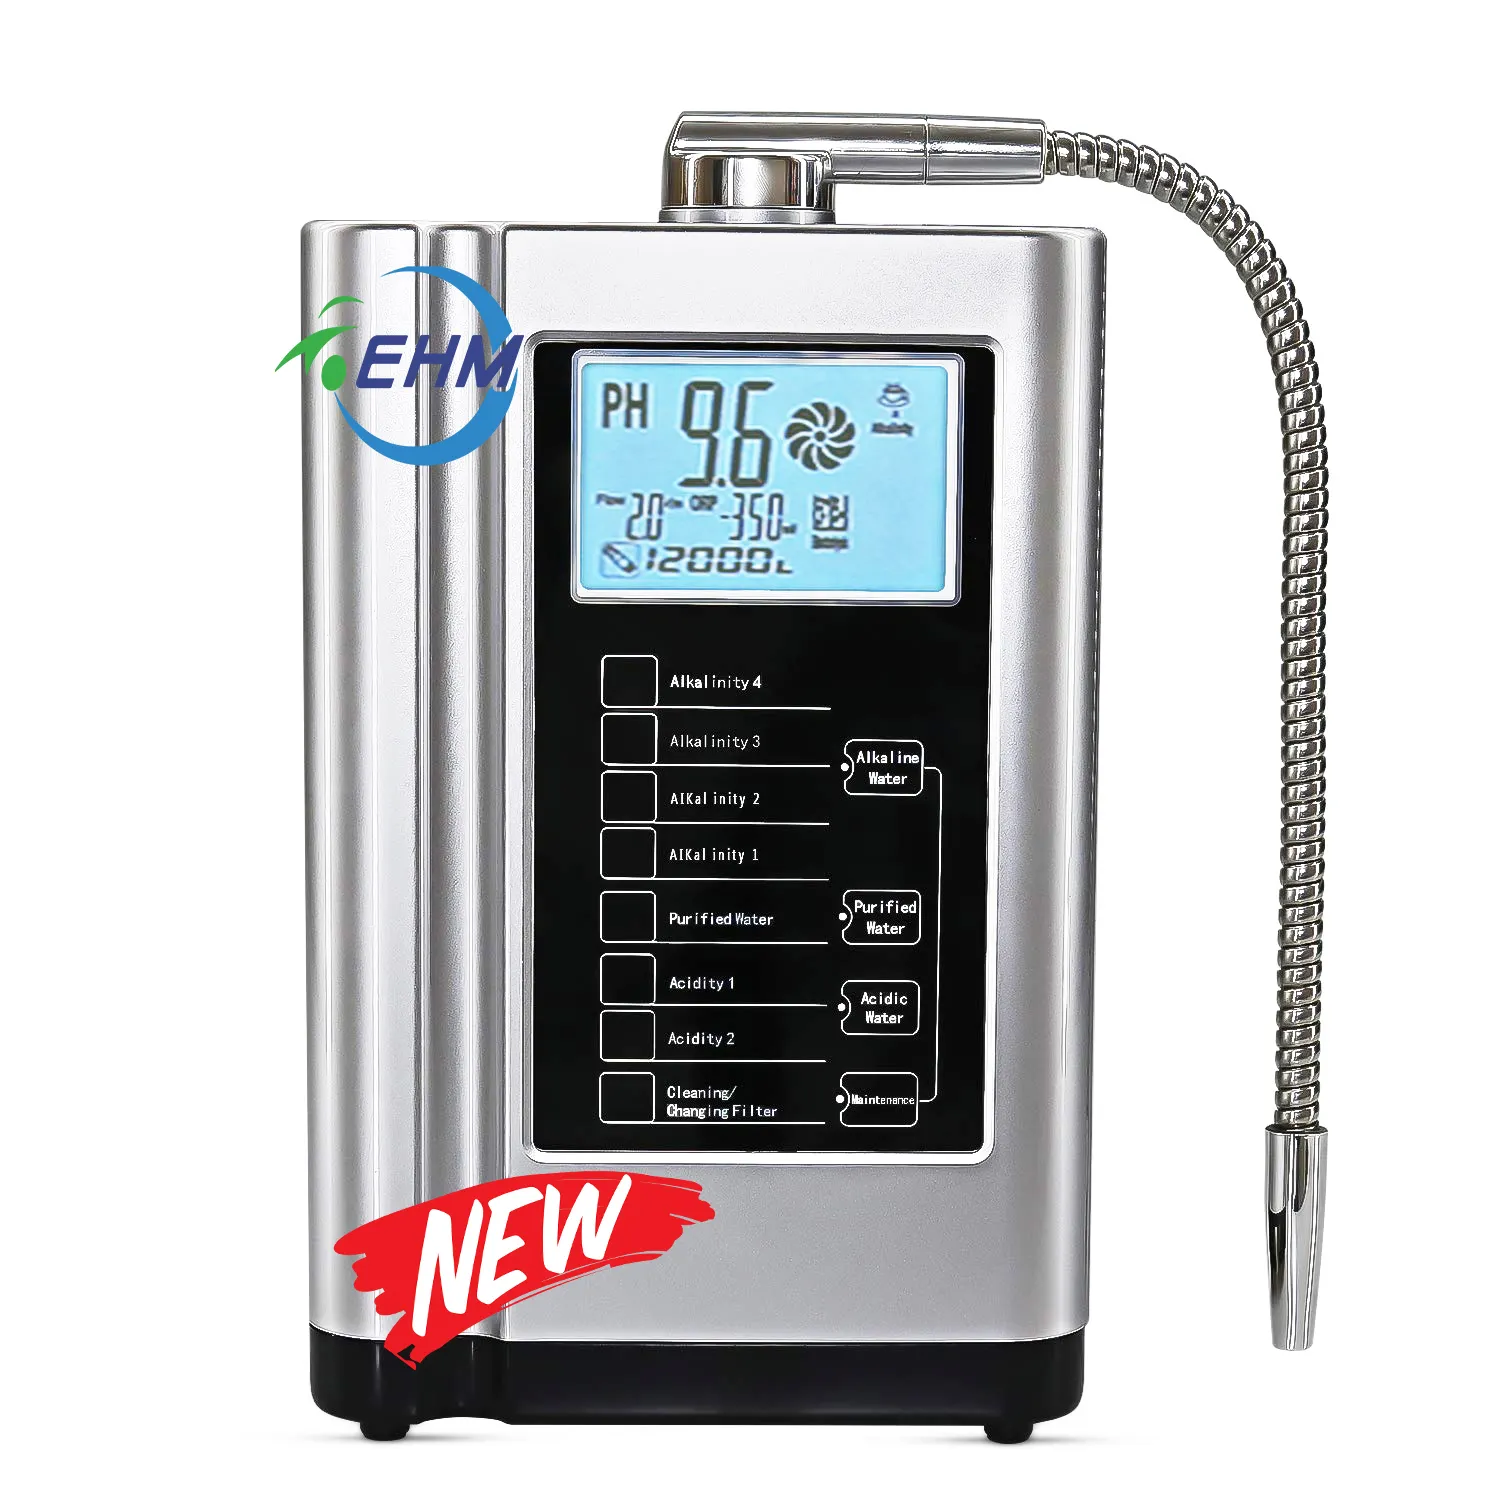 7 플레이트 EHM-729 kangen 물 기계 알칼리성 물 필터 높은 pH 값